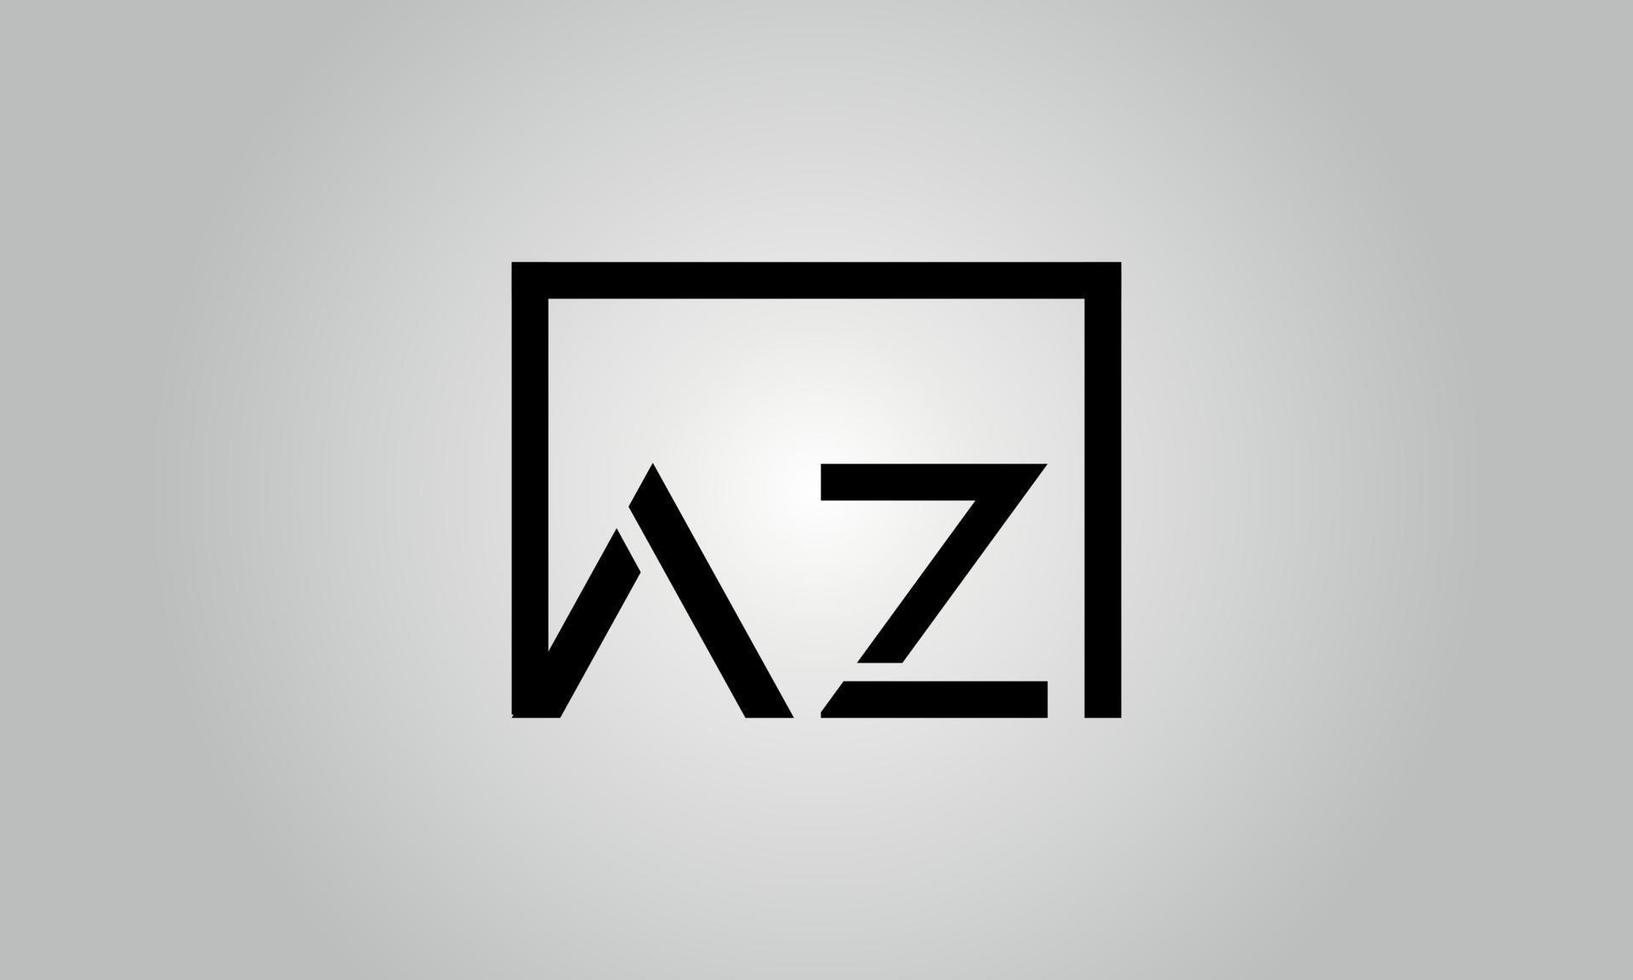 création de logo lettre az. logo az avec forme carrée dans le modèle de vecteur gratuit de vecteur de couleurs noires.